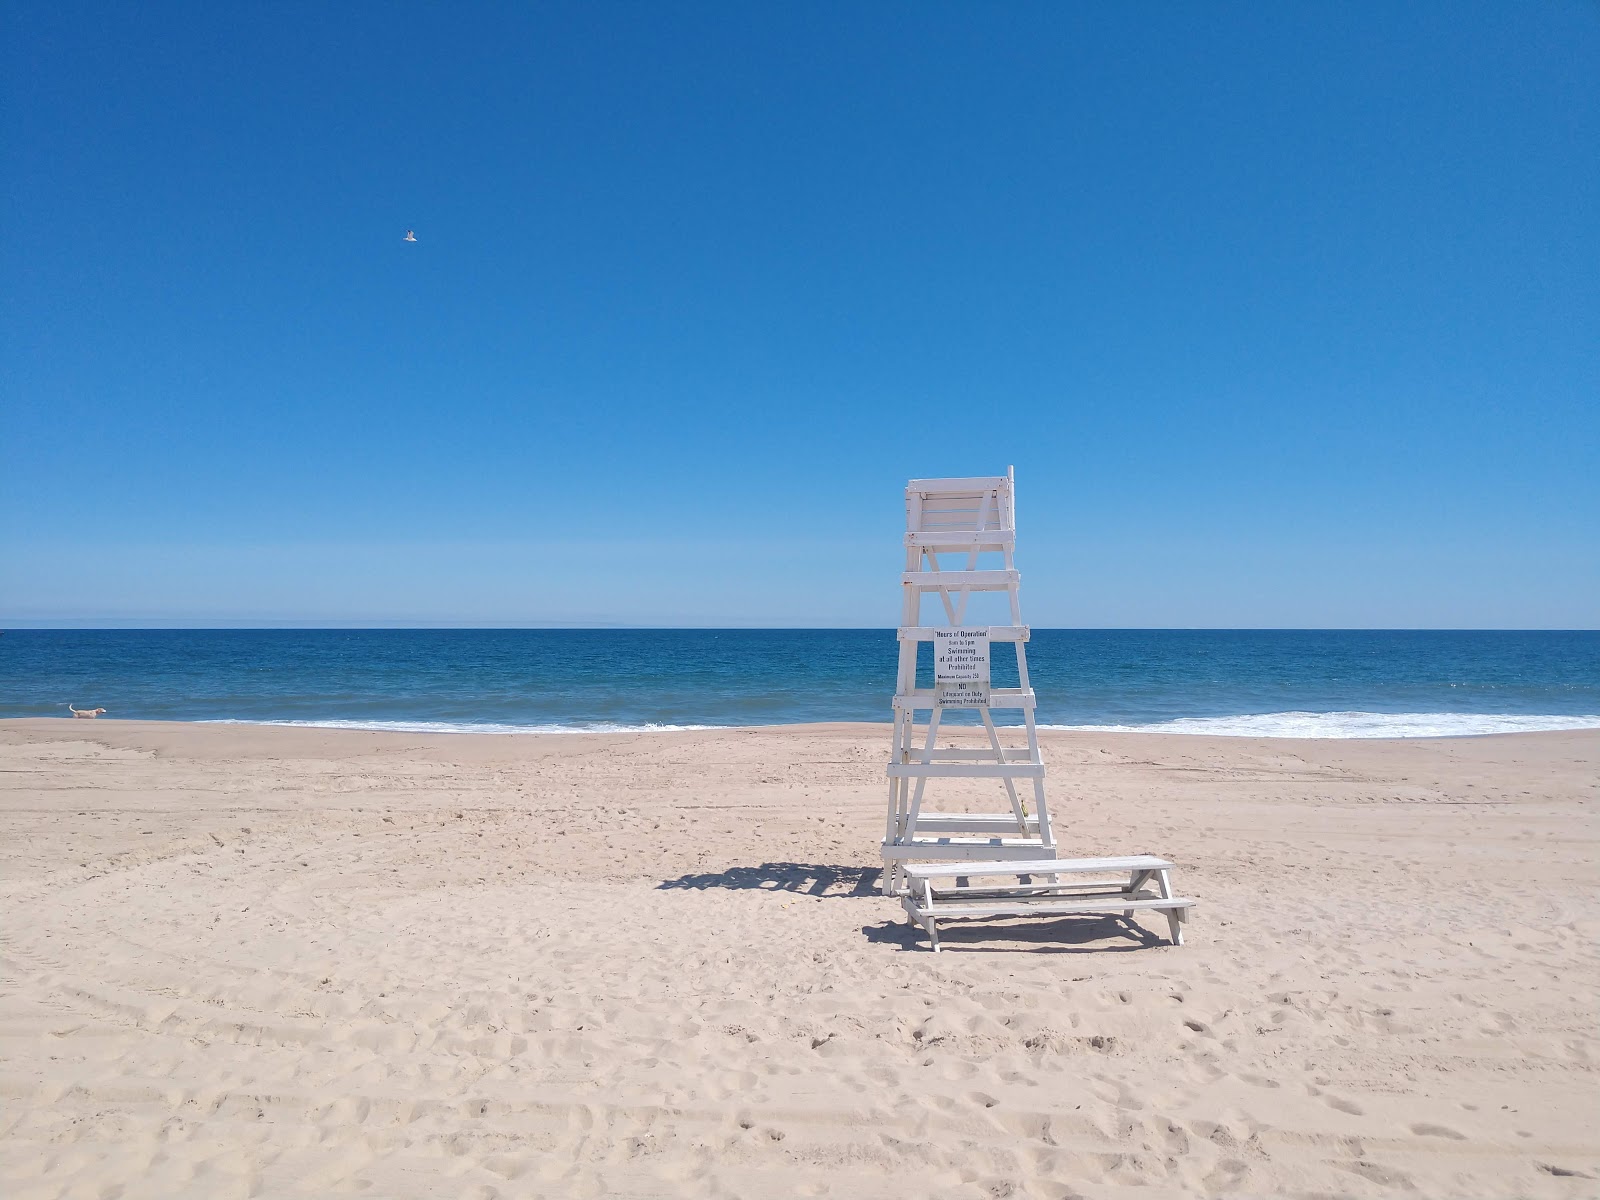 Napeague Ocean Beach的照片 带有蓝色纯水表面